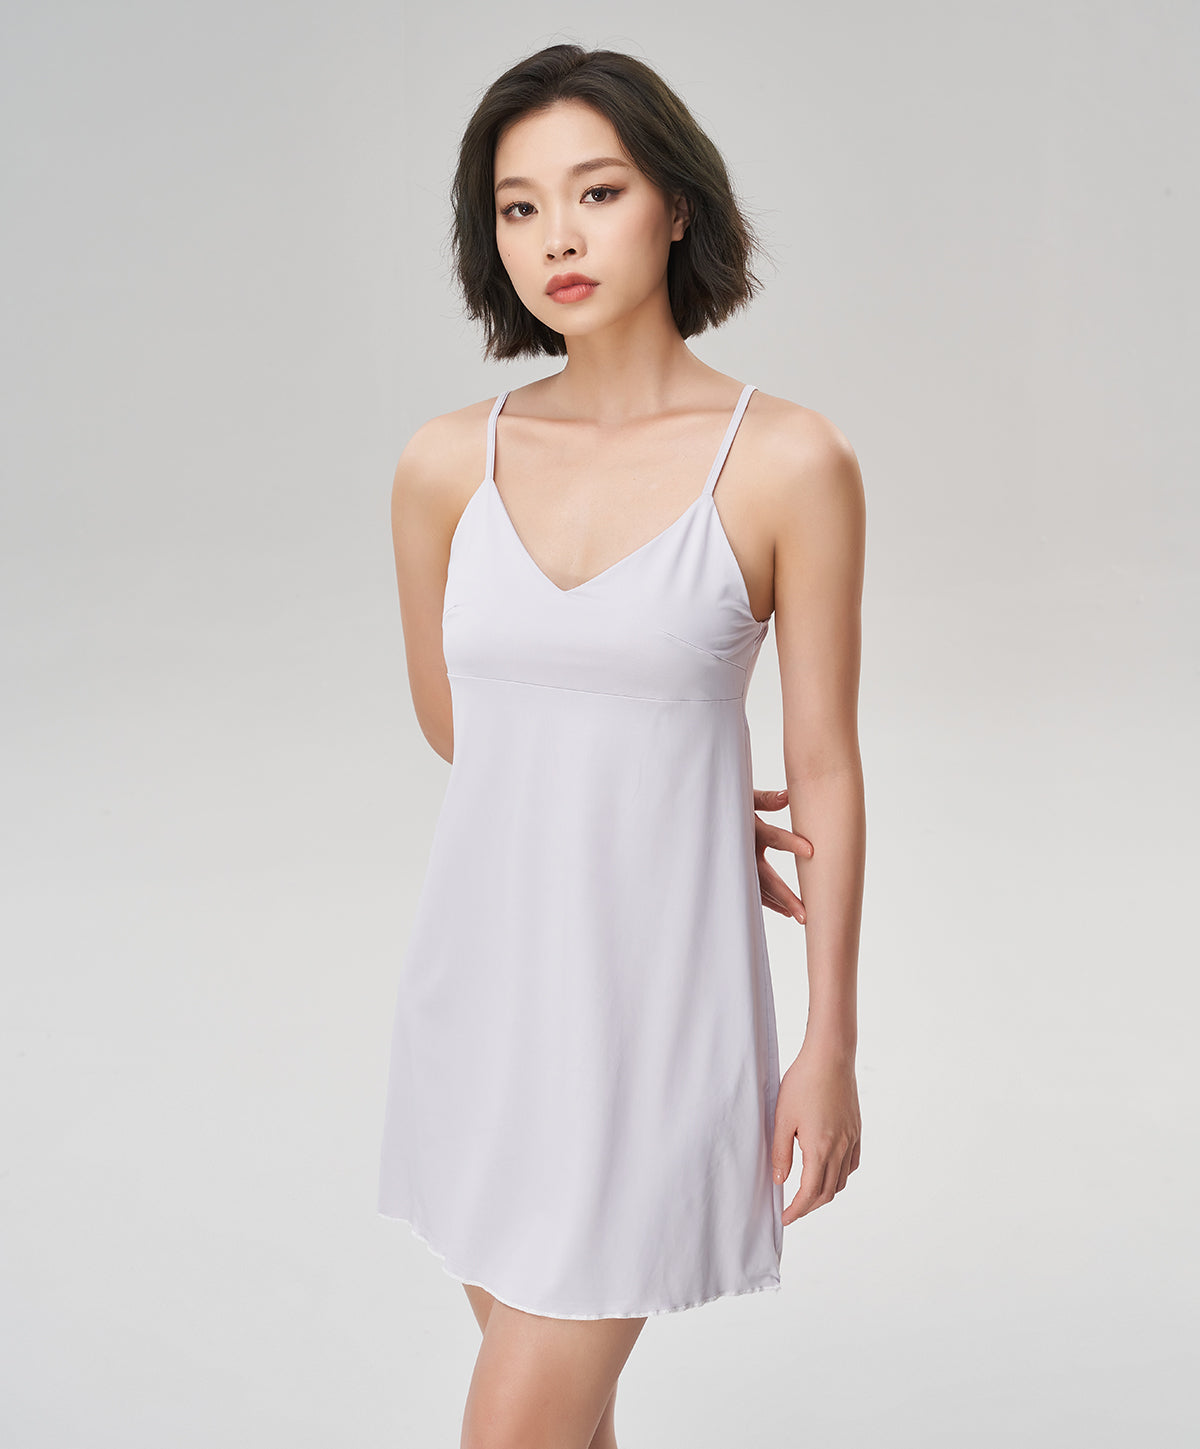 V-neck chiffon slip dress, Miiyu, Shop Women's Slips & Shapewear Online